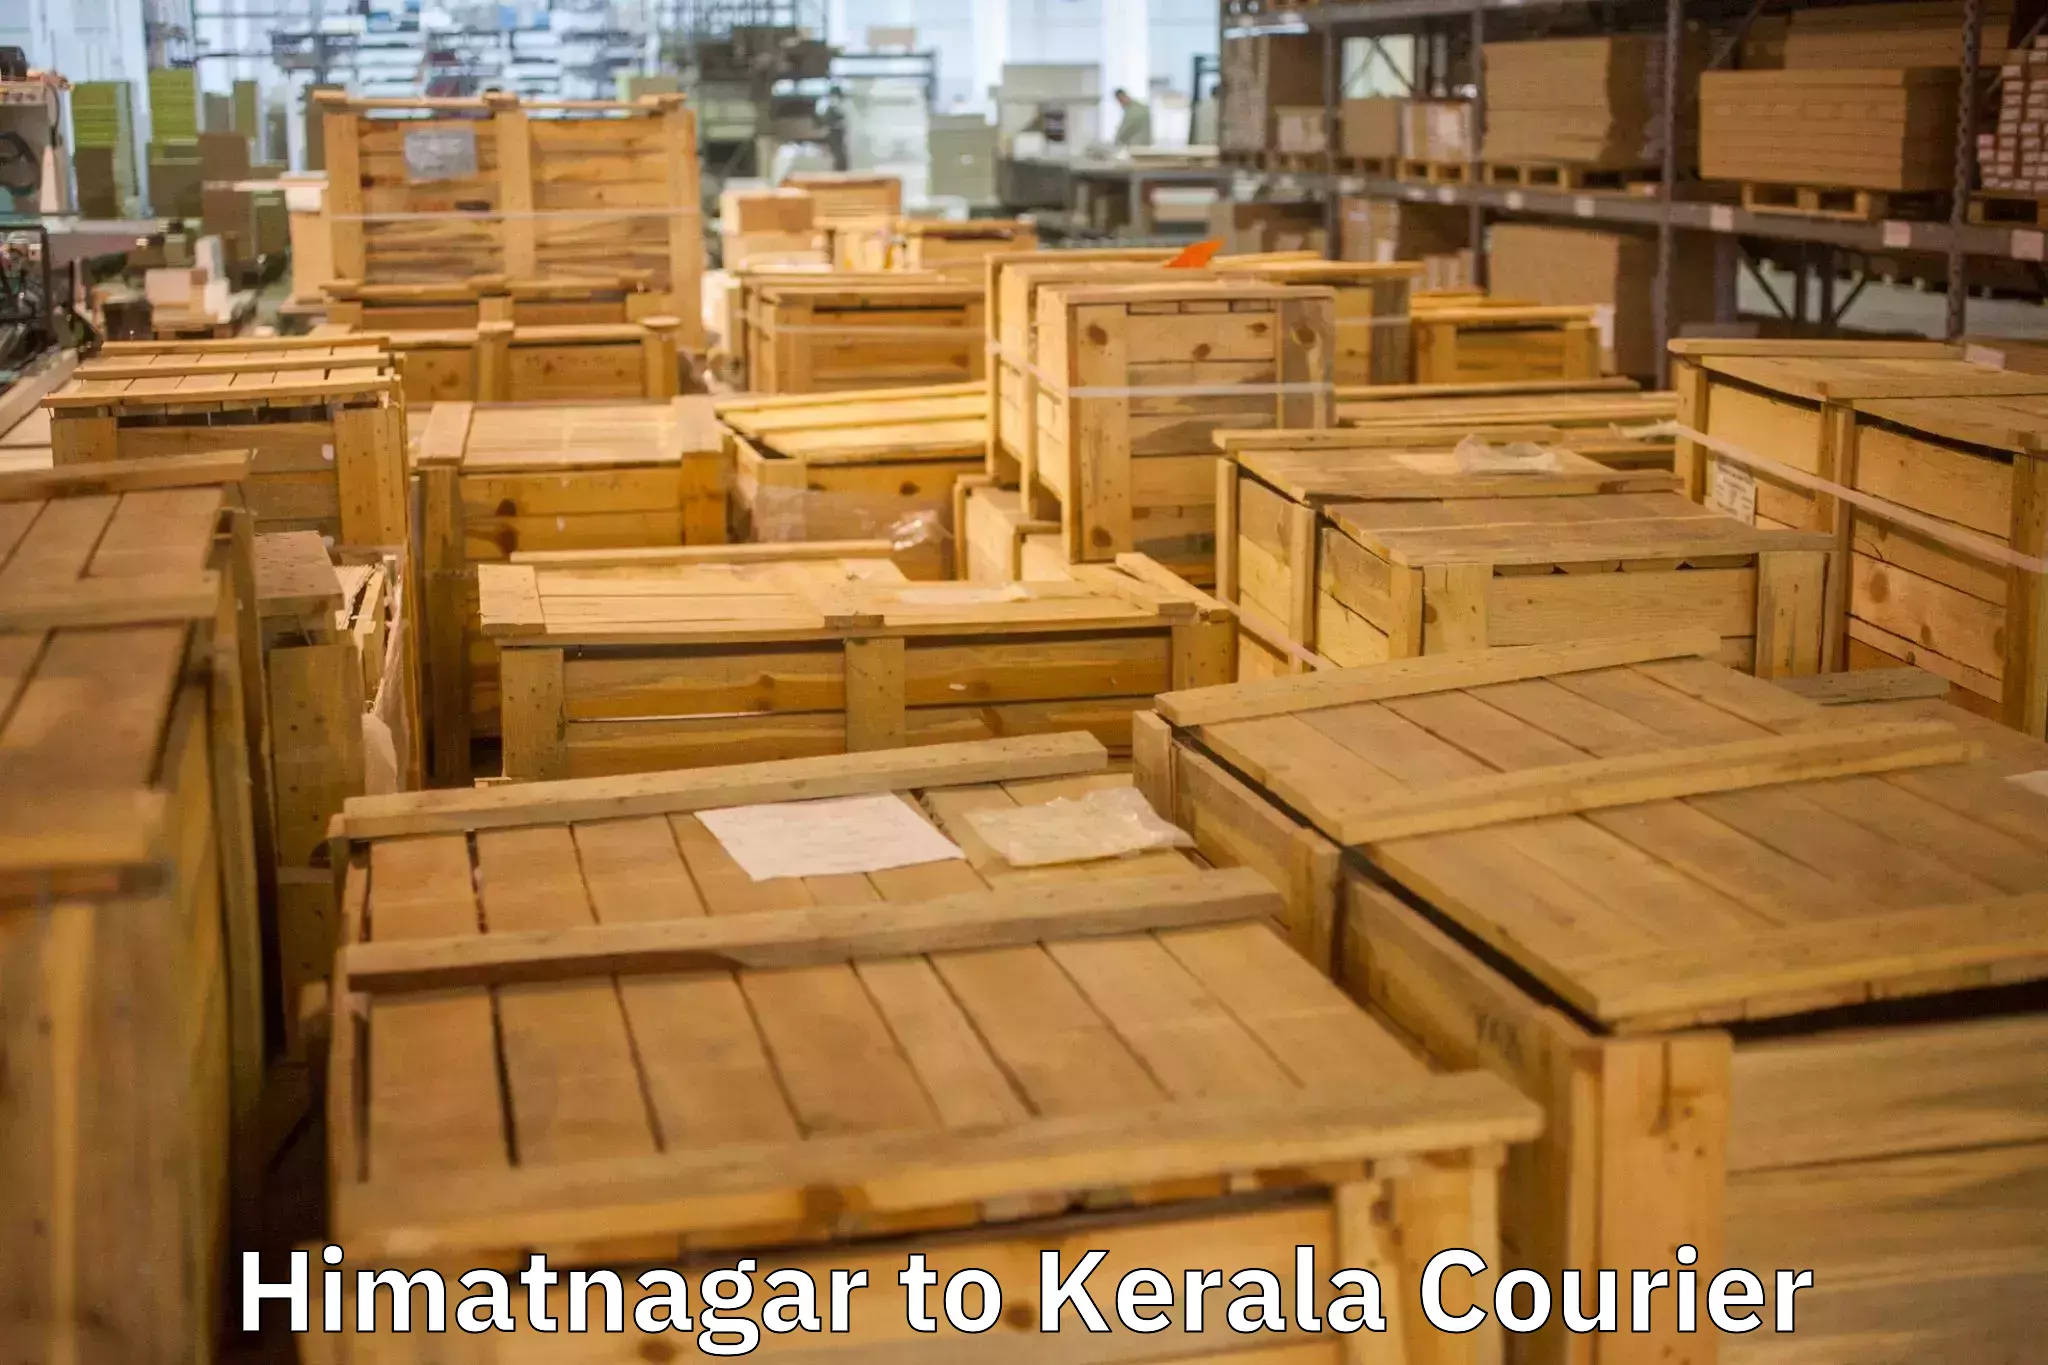 Moving and packing experts Himatnagar to Kerala